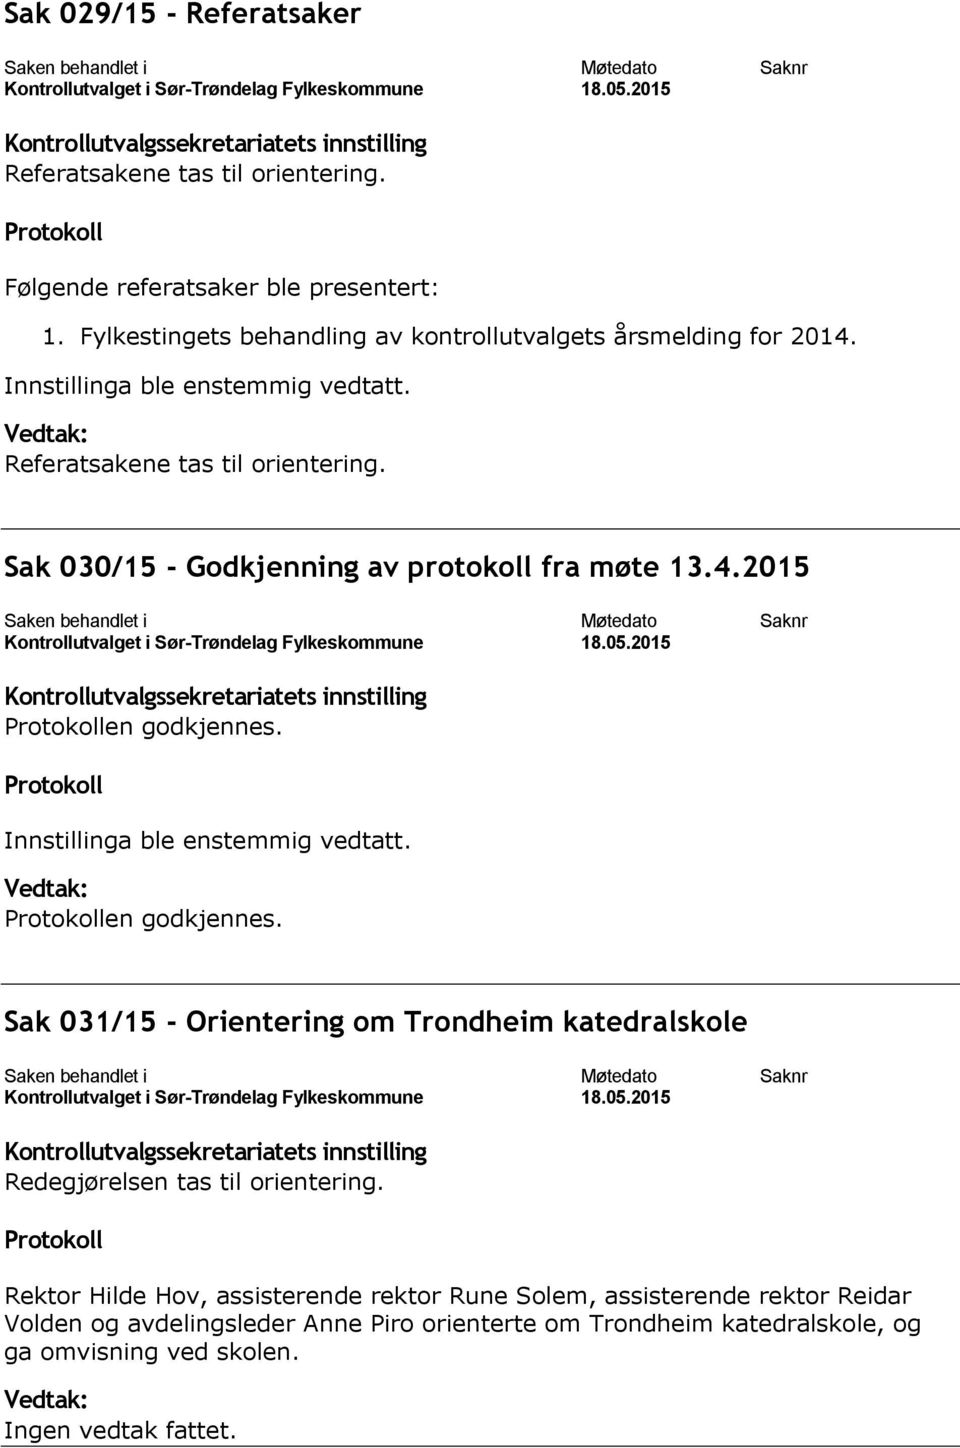 Sak 030/15 - Godkjenning av protokoll fra møte 13.4.2015 en godkjennes. Innstillinga ble enstemmig vedtatt. en godkjennes. Sak 031/15 - Orientering om Trondheim katedralskole Redegjørelsen tas til orientering.